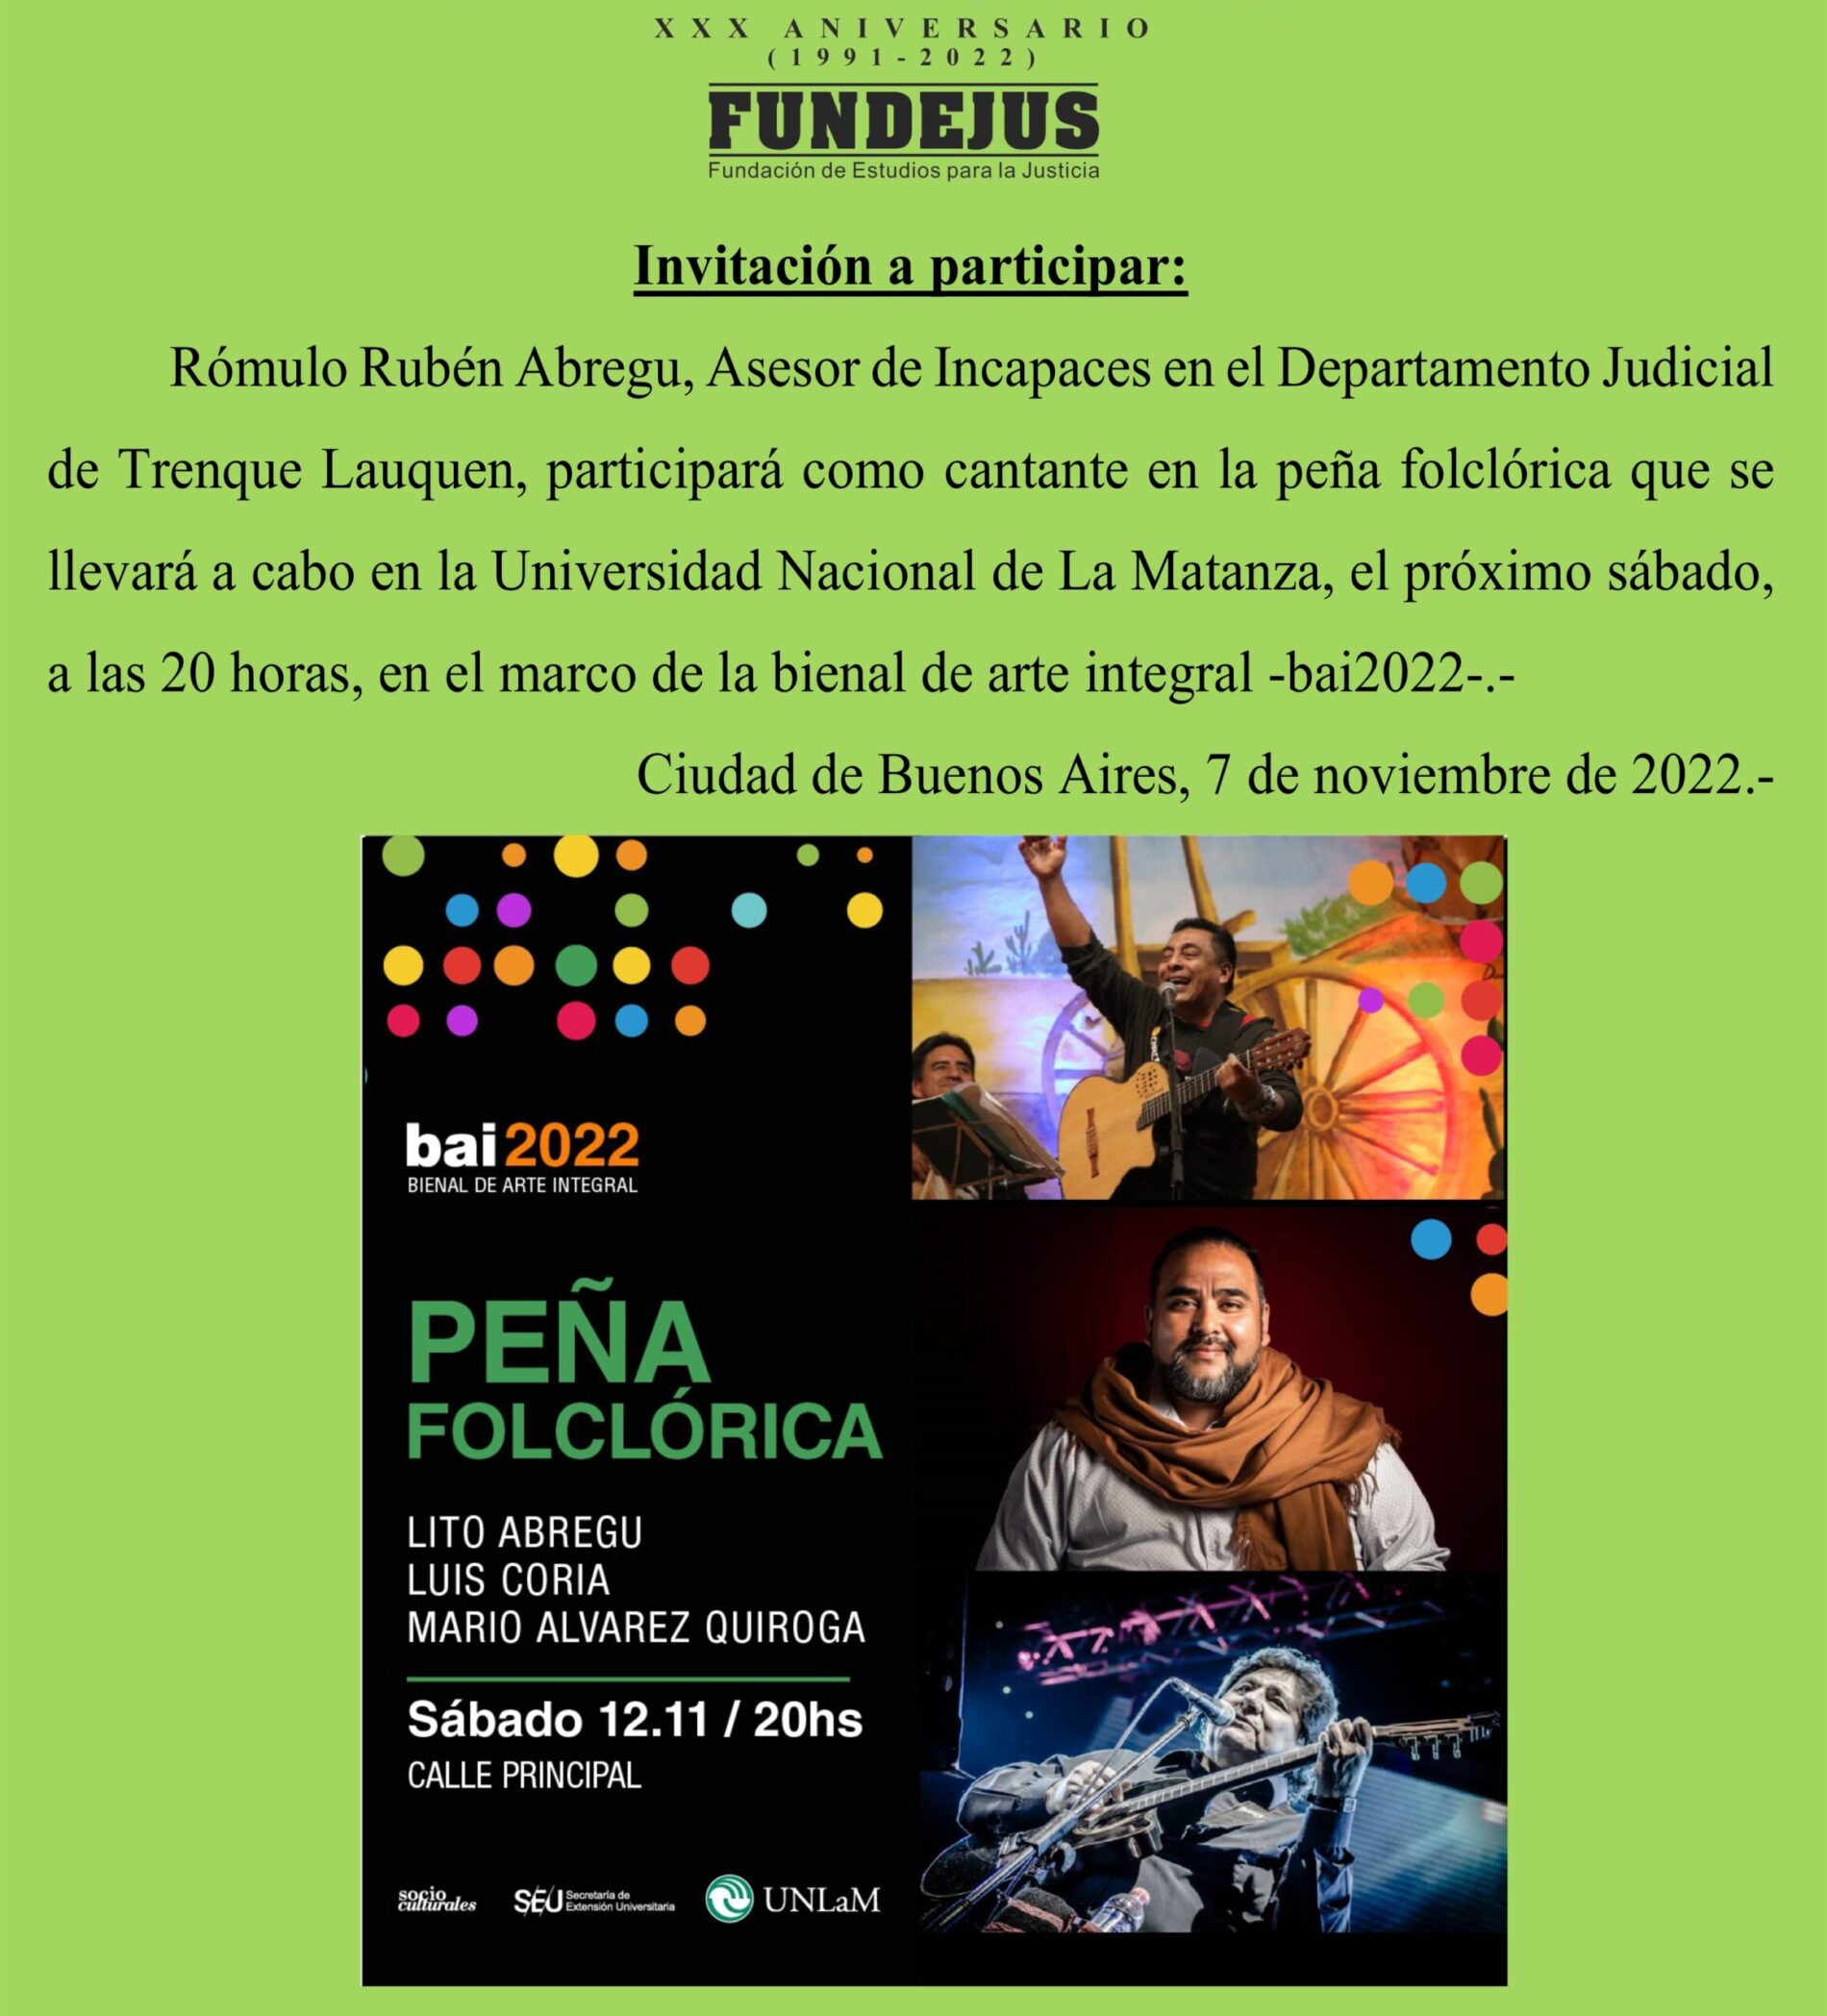 Peña folclórica en UNLaM – Participación de Rómulo Rubén Abregu (Asesor de Incapaces de Trenque Lauquen).